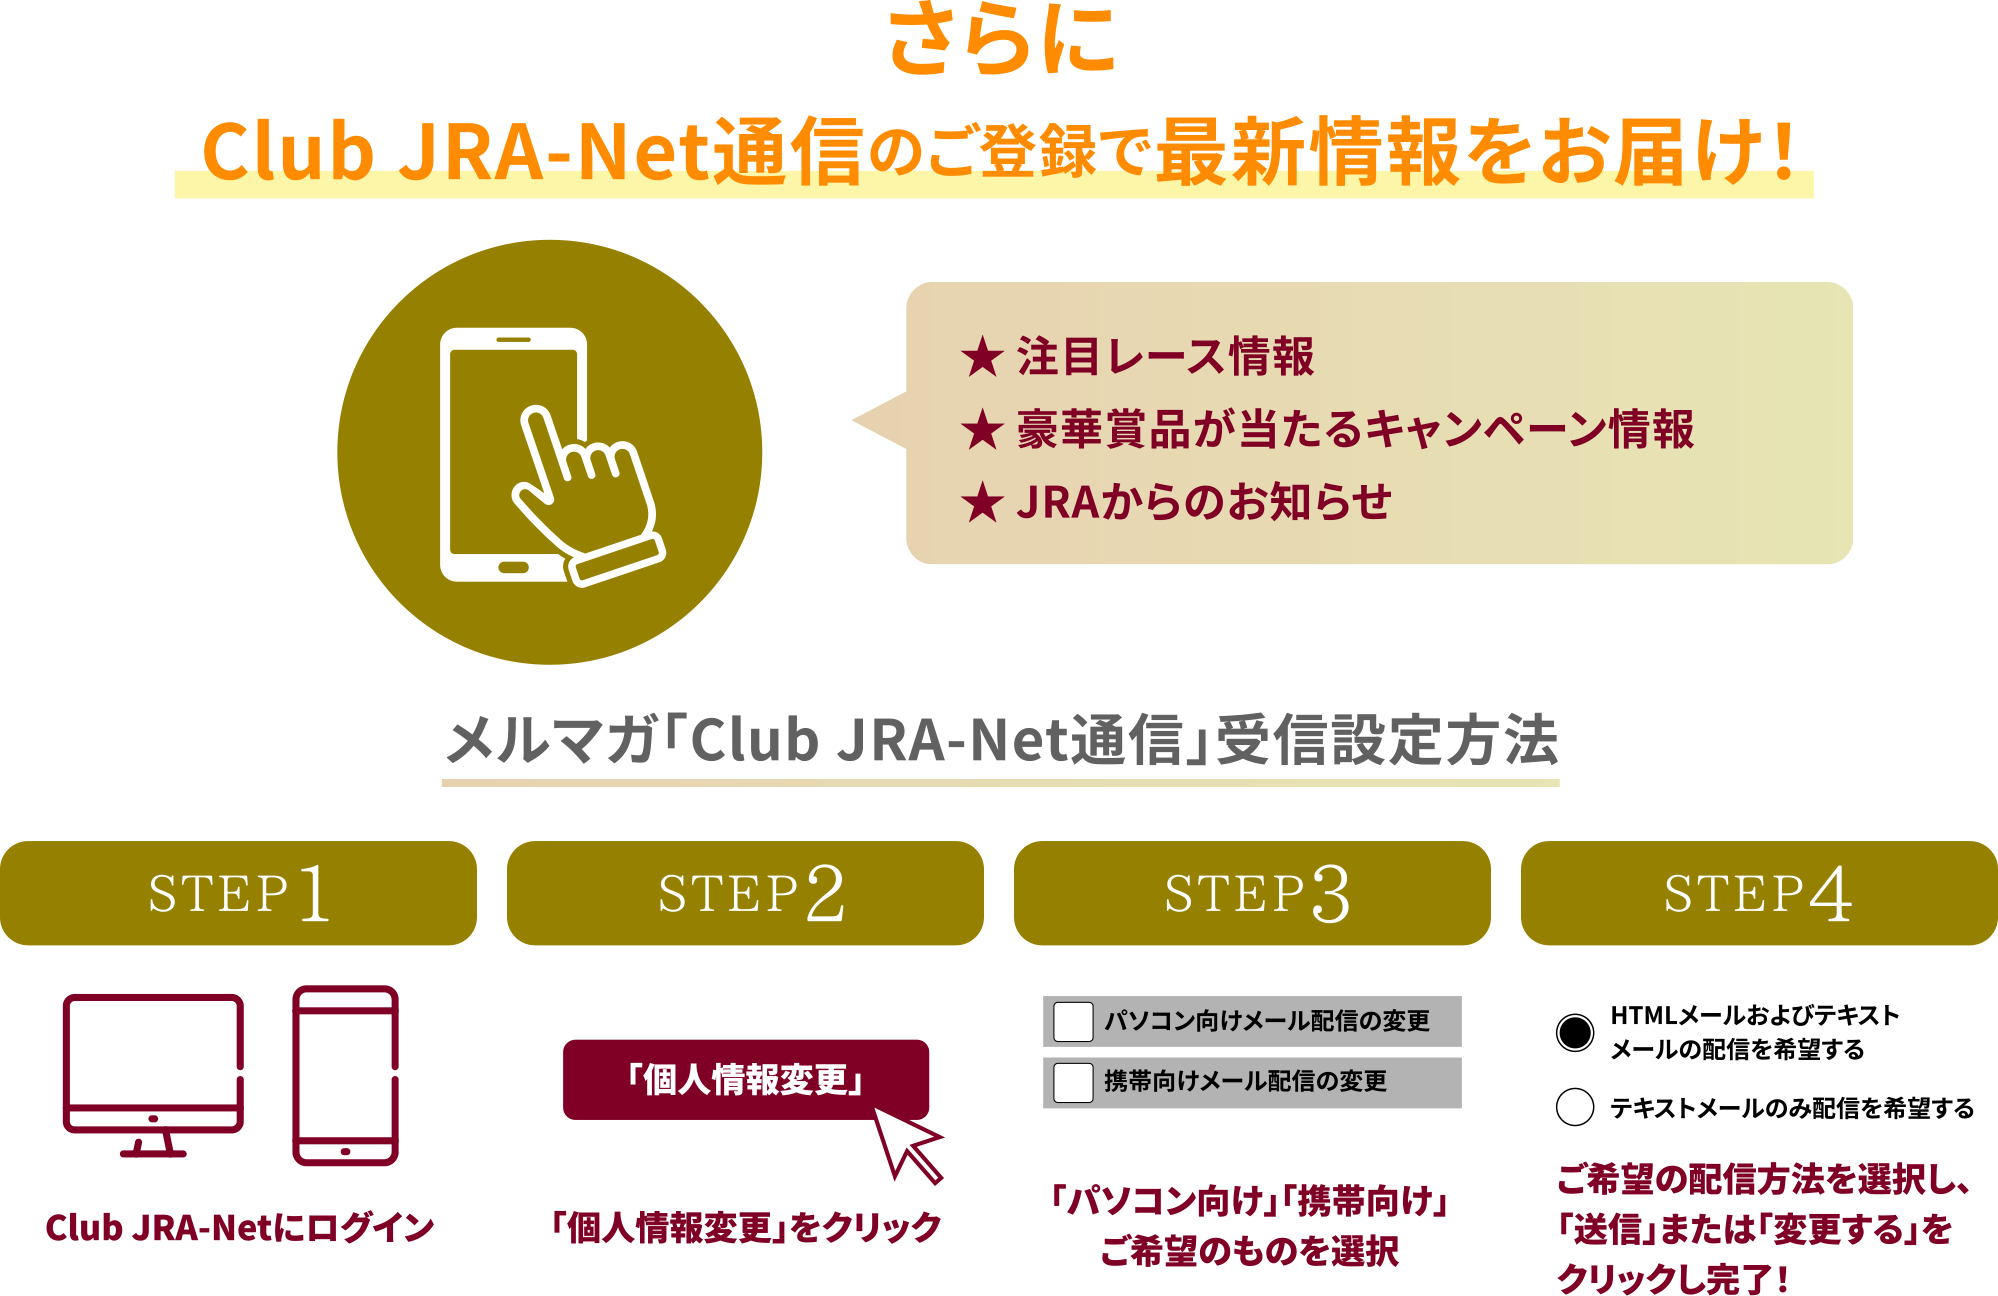 Club JRA-NetʐM̂o^ōŐV͂I